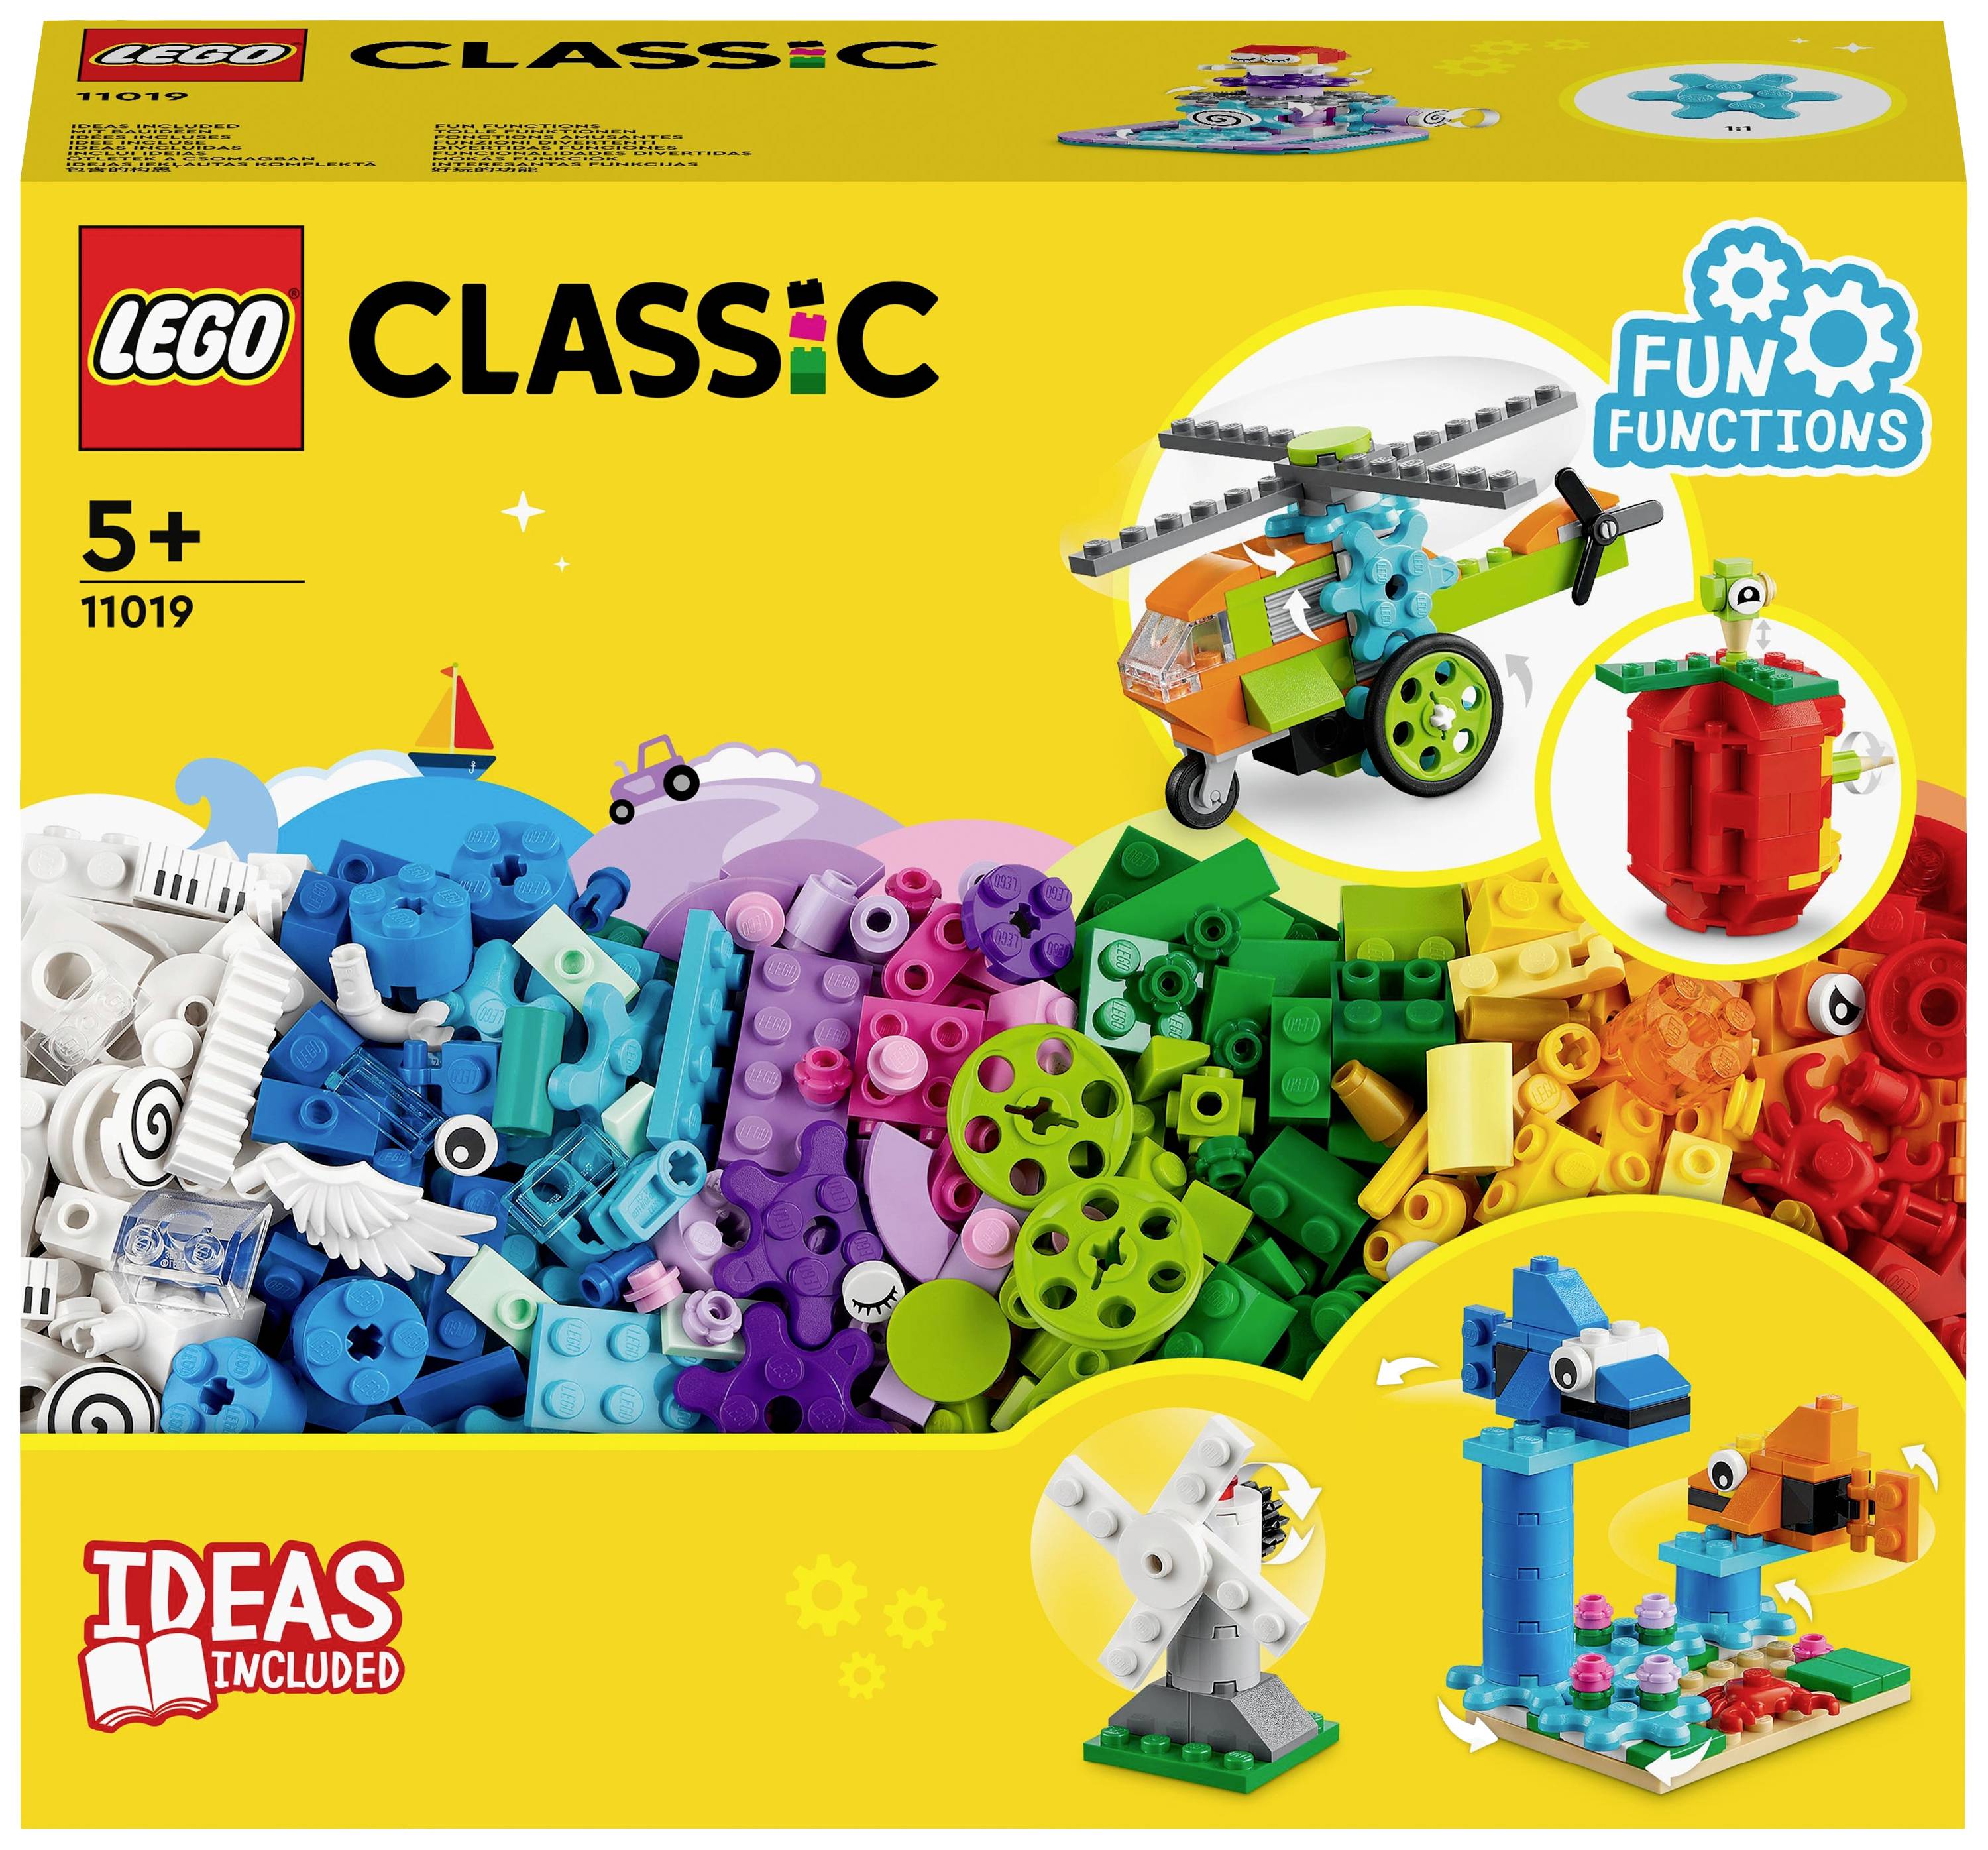 Patois Kiezen geschenk 11019 LEGO® CLASSIC Bouwstenen en functies kopen ? Conrad Electronic